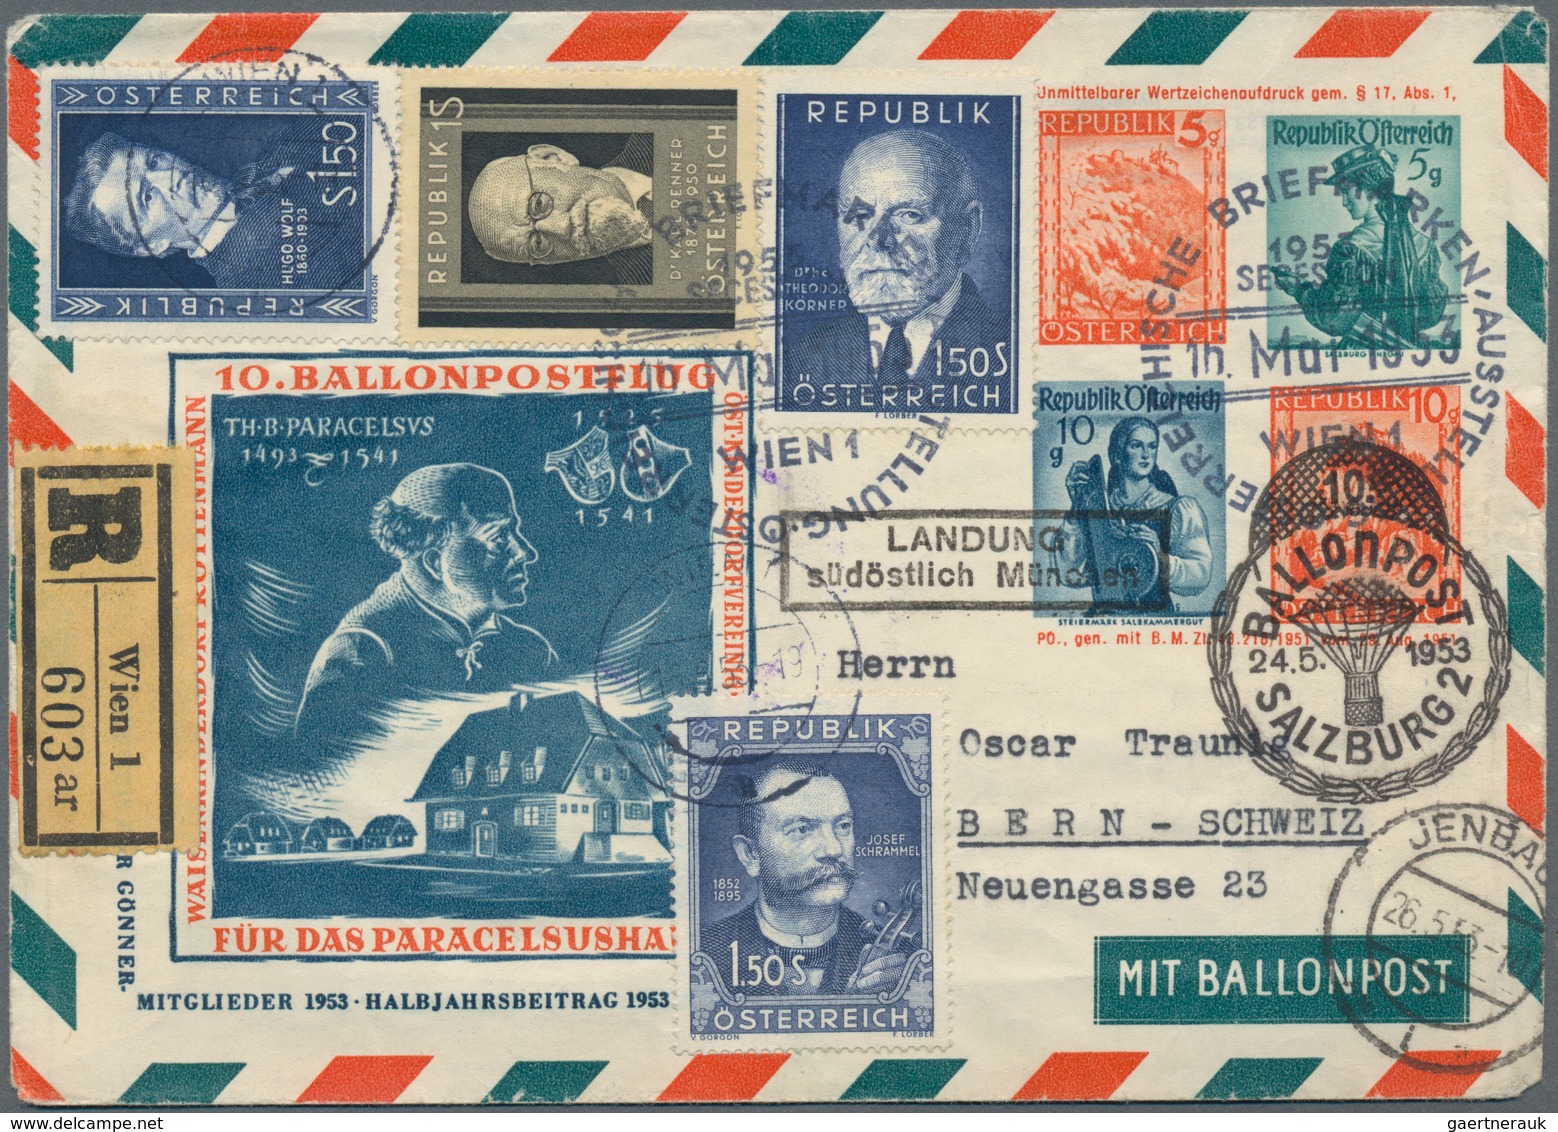 Österreich: 1948/1961, Sammlungspartie von ca. 86 Ballonpostbelegen der Österreichischen Pro Juventu